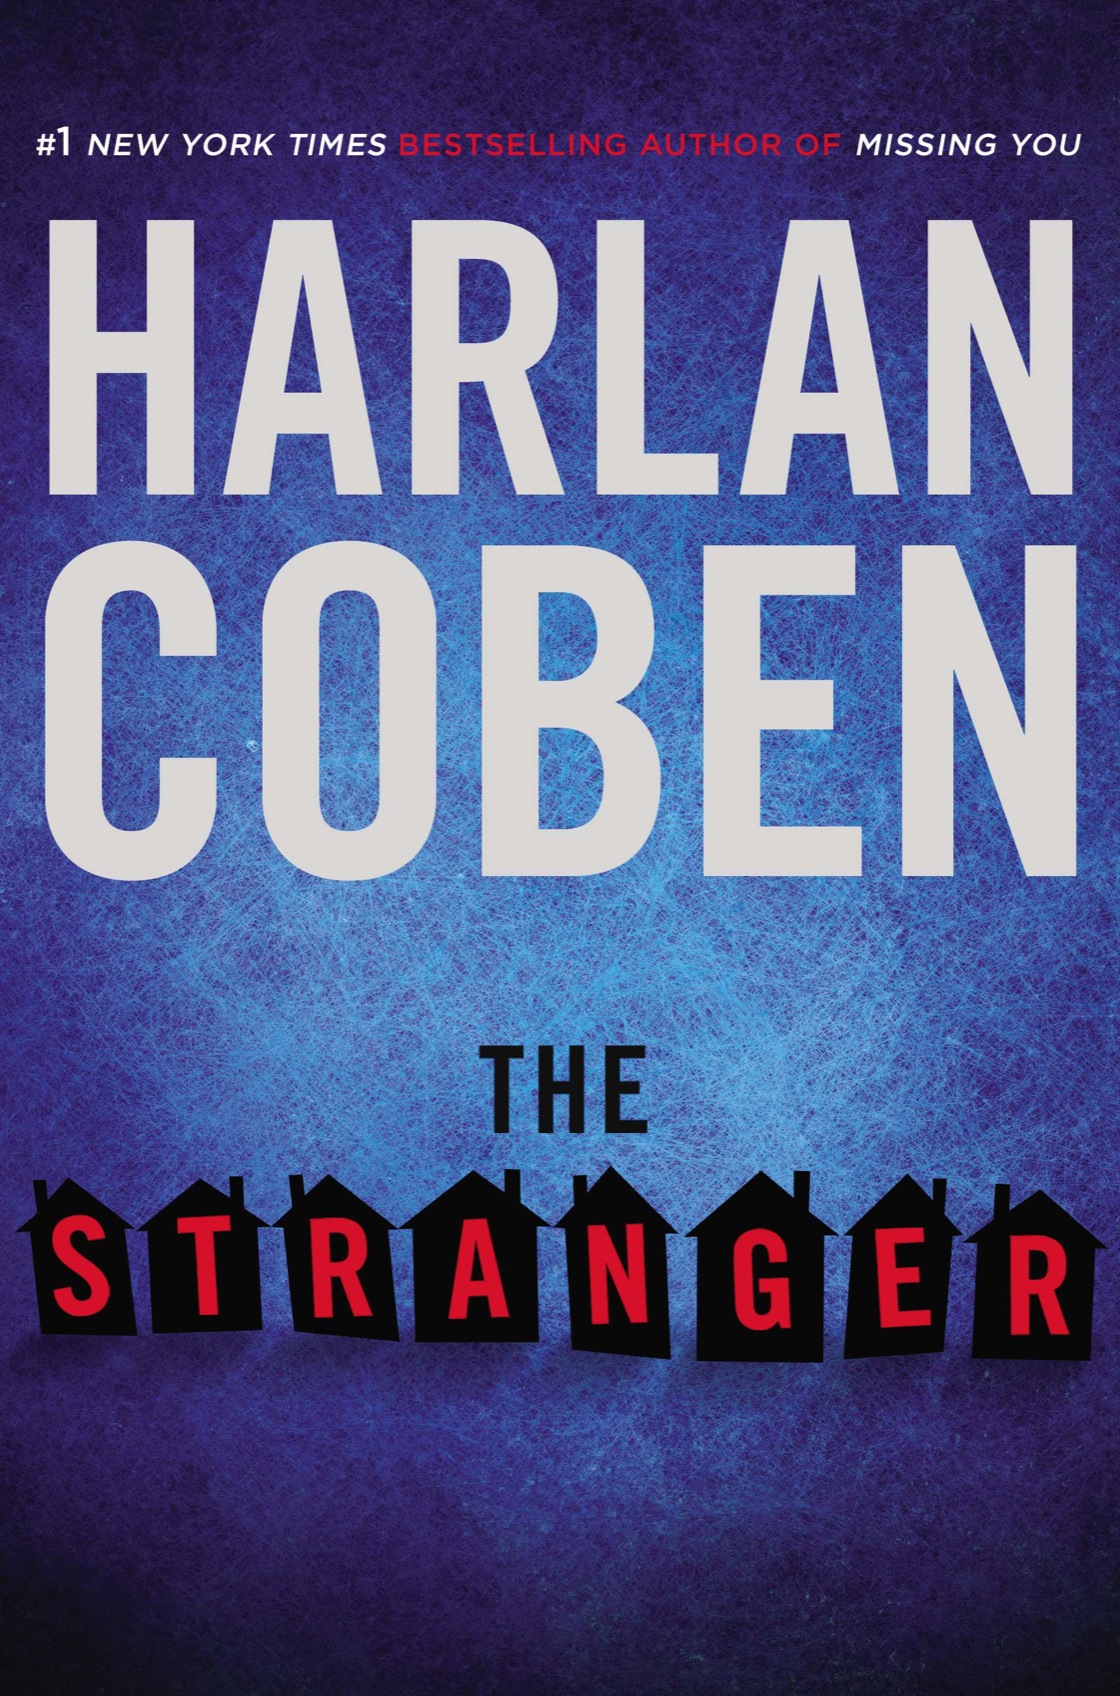 The Stranger (2015) by Harlan Coben